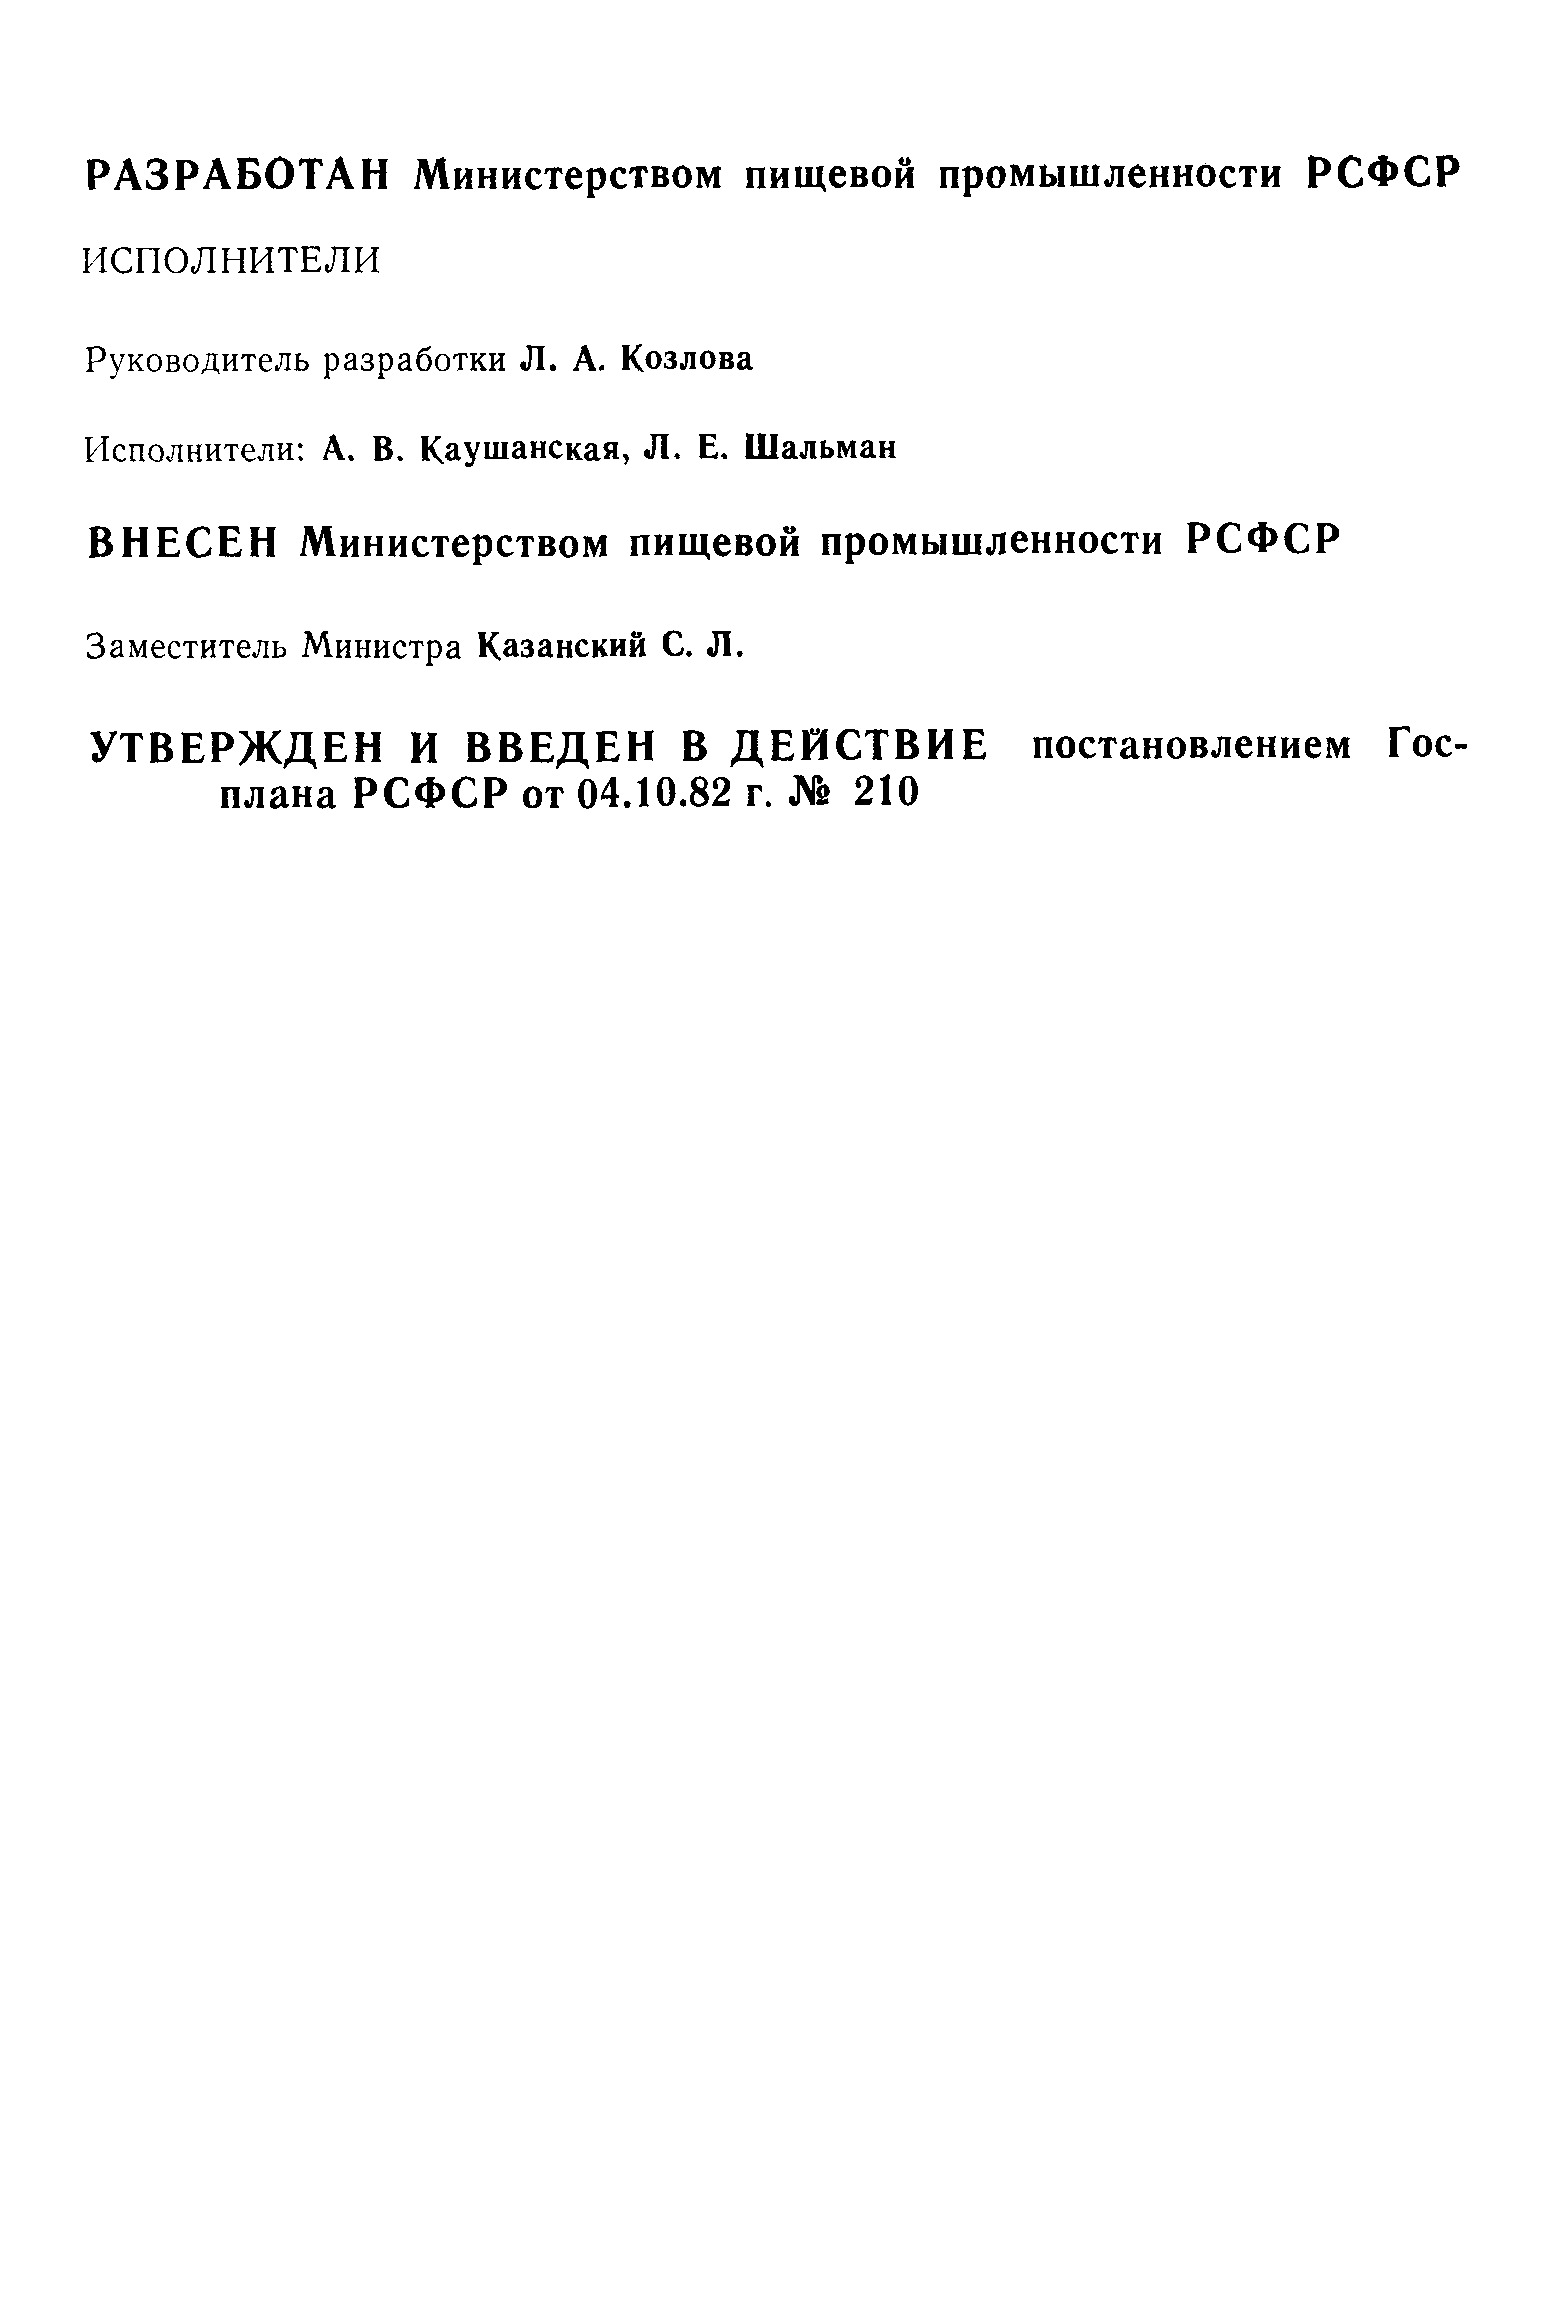 РСТ РСФСР 286-82